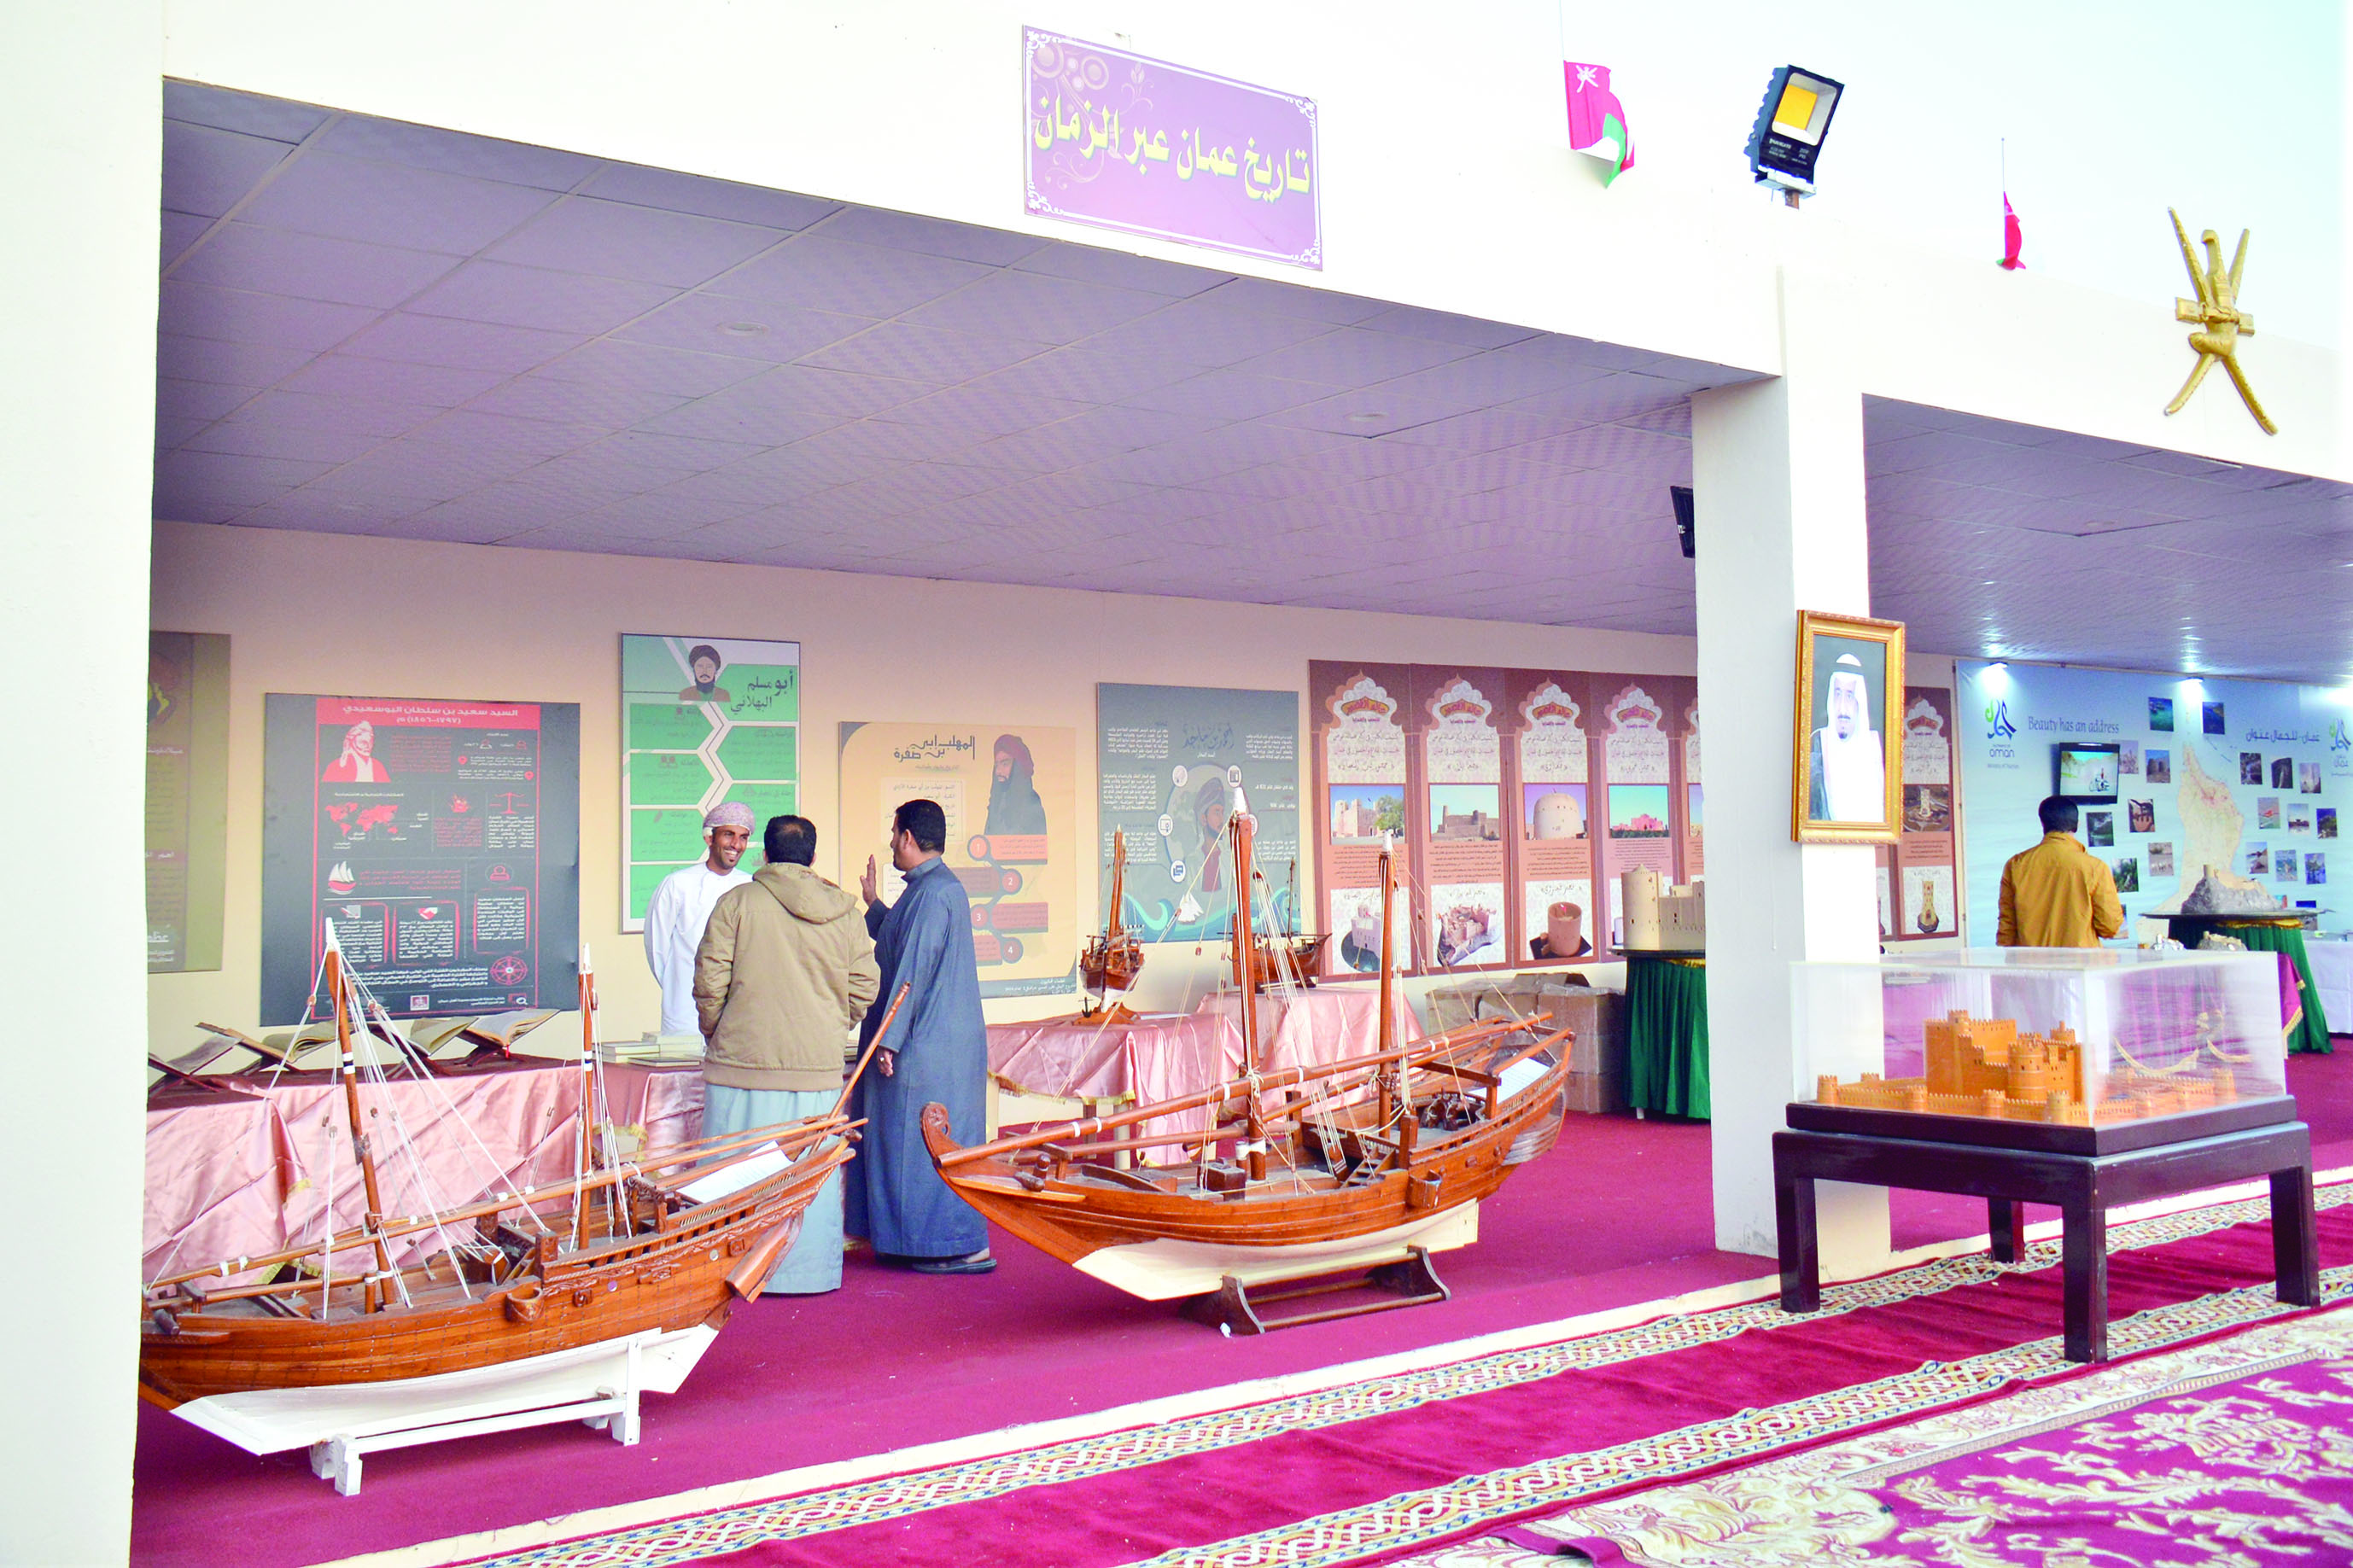 السعوديون يتعرفون على التراث العماني.. في معرض تضمن فنونا شعبية كالعازي والرزحة